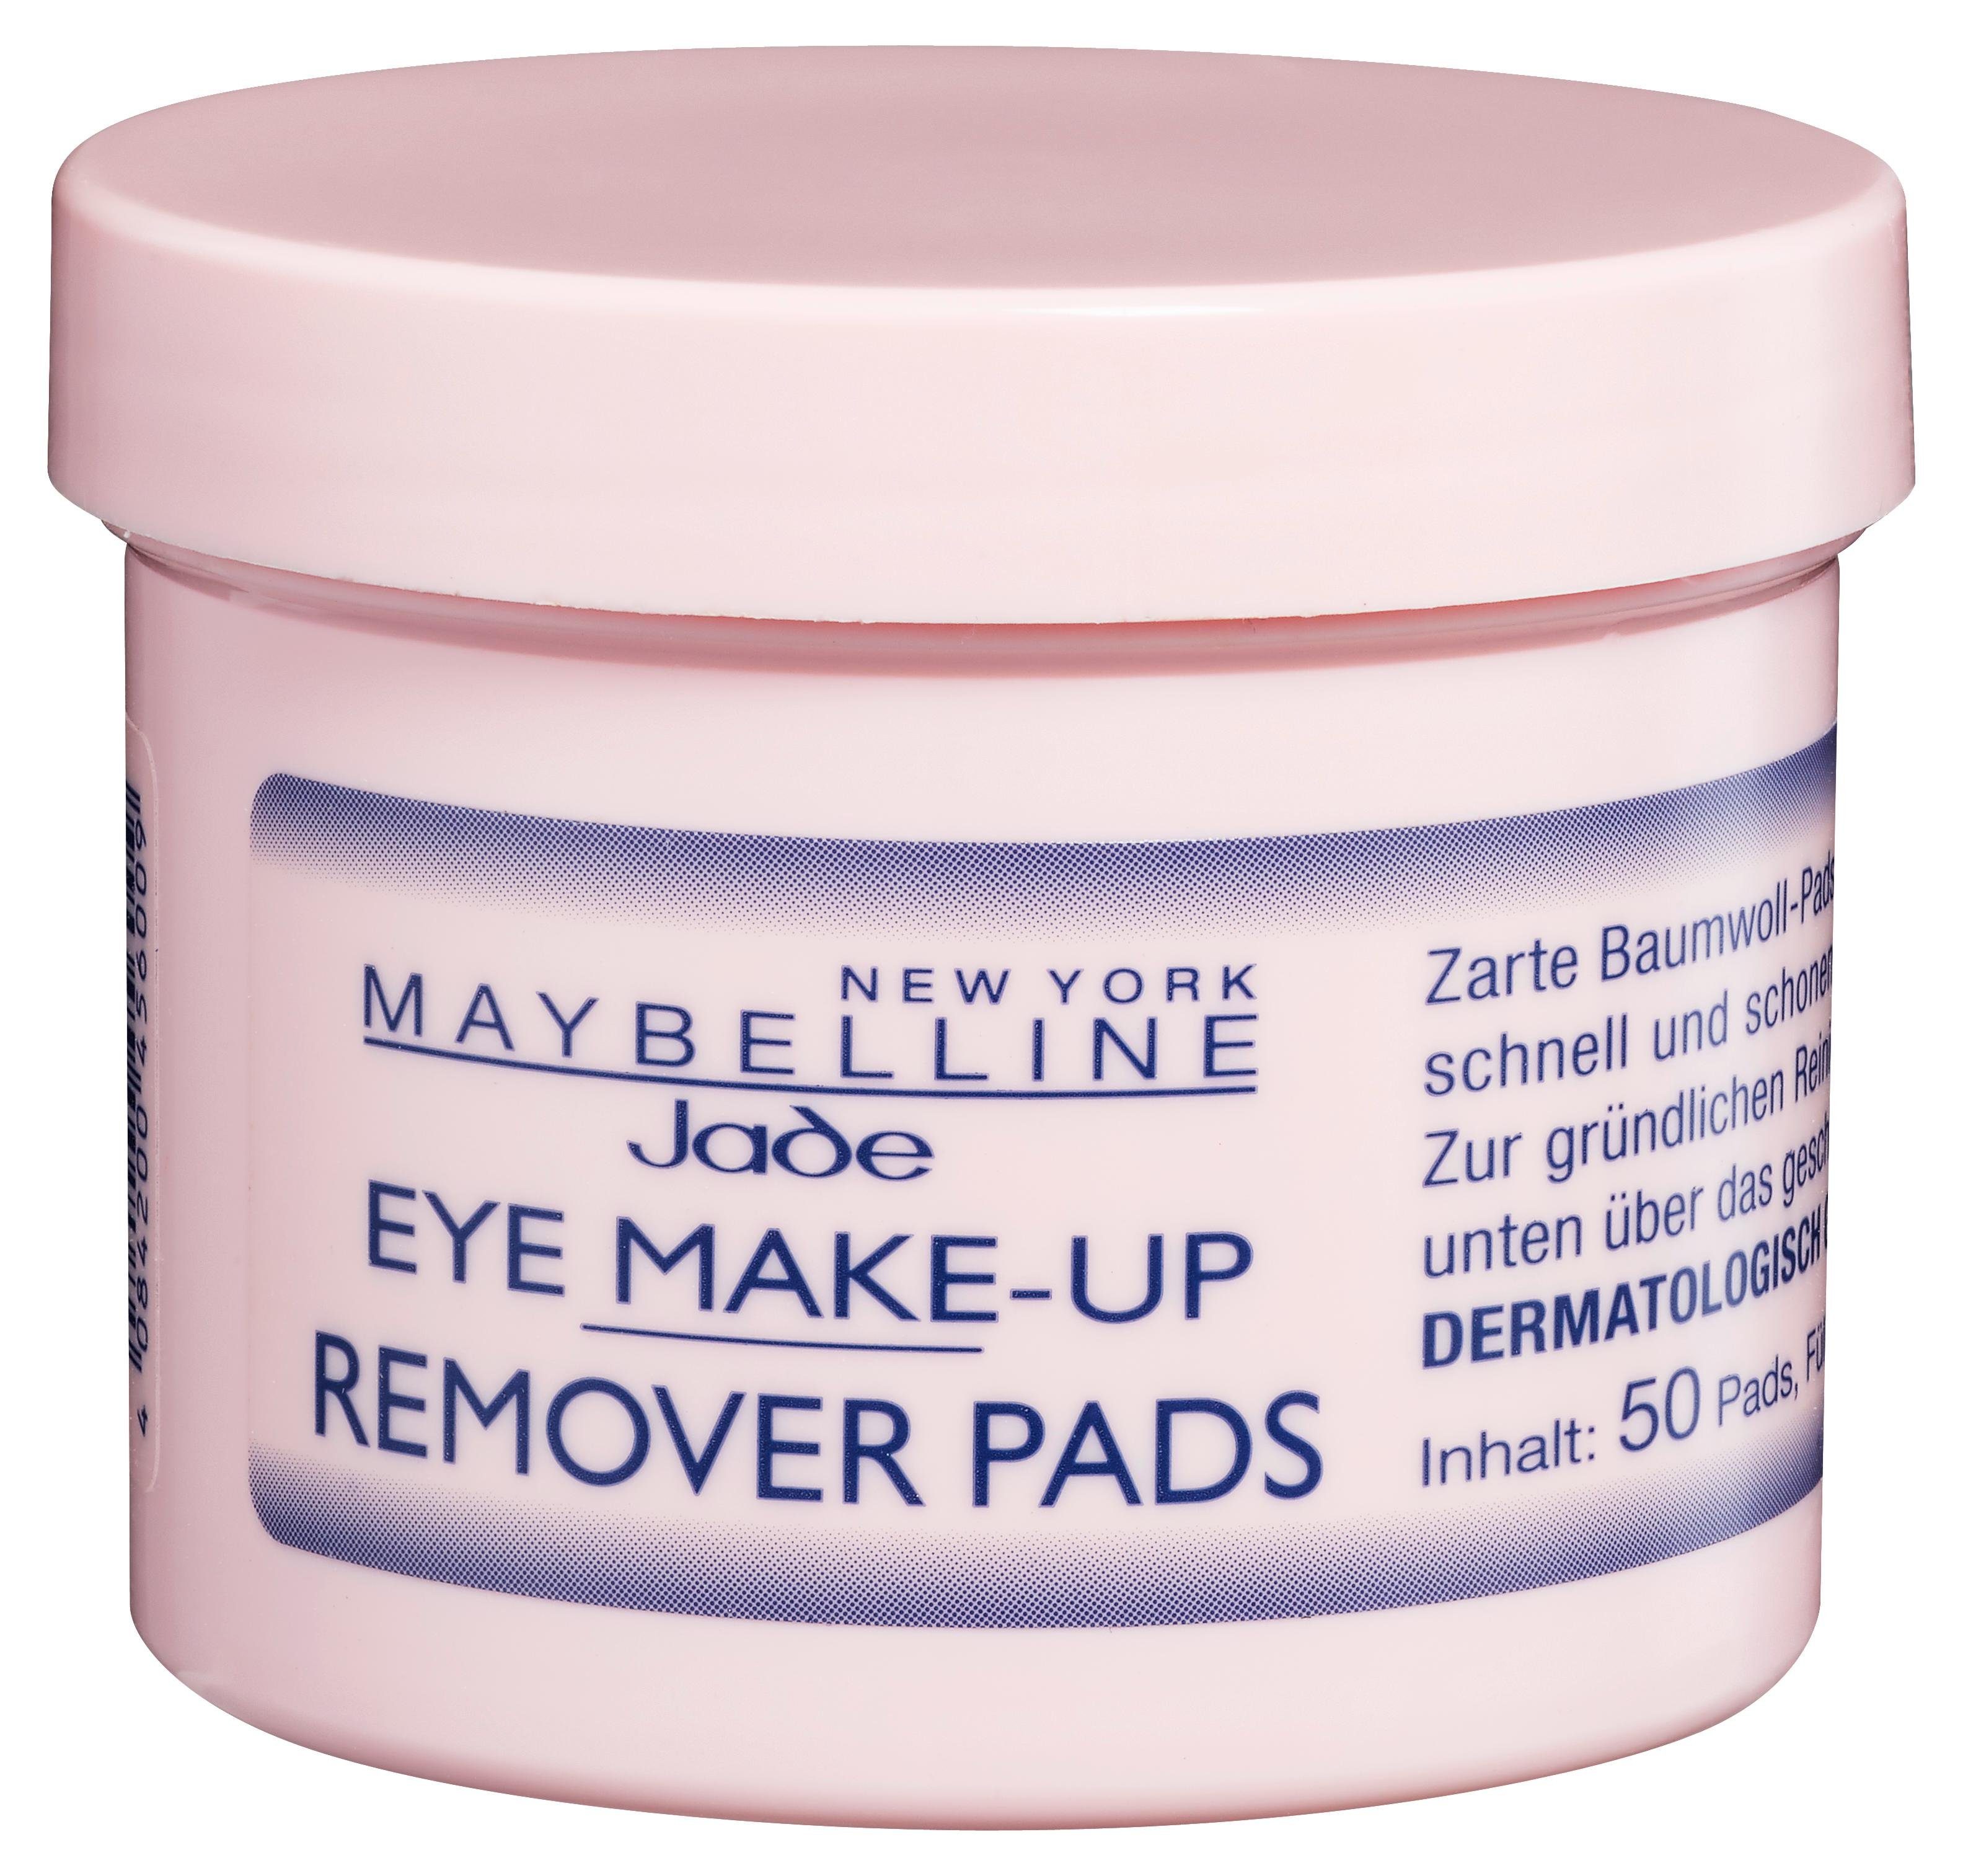 MAYBELLINE Augen-Make-up-Entferner Remover Make-Up YORK Pads NEW Eye